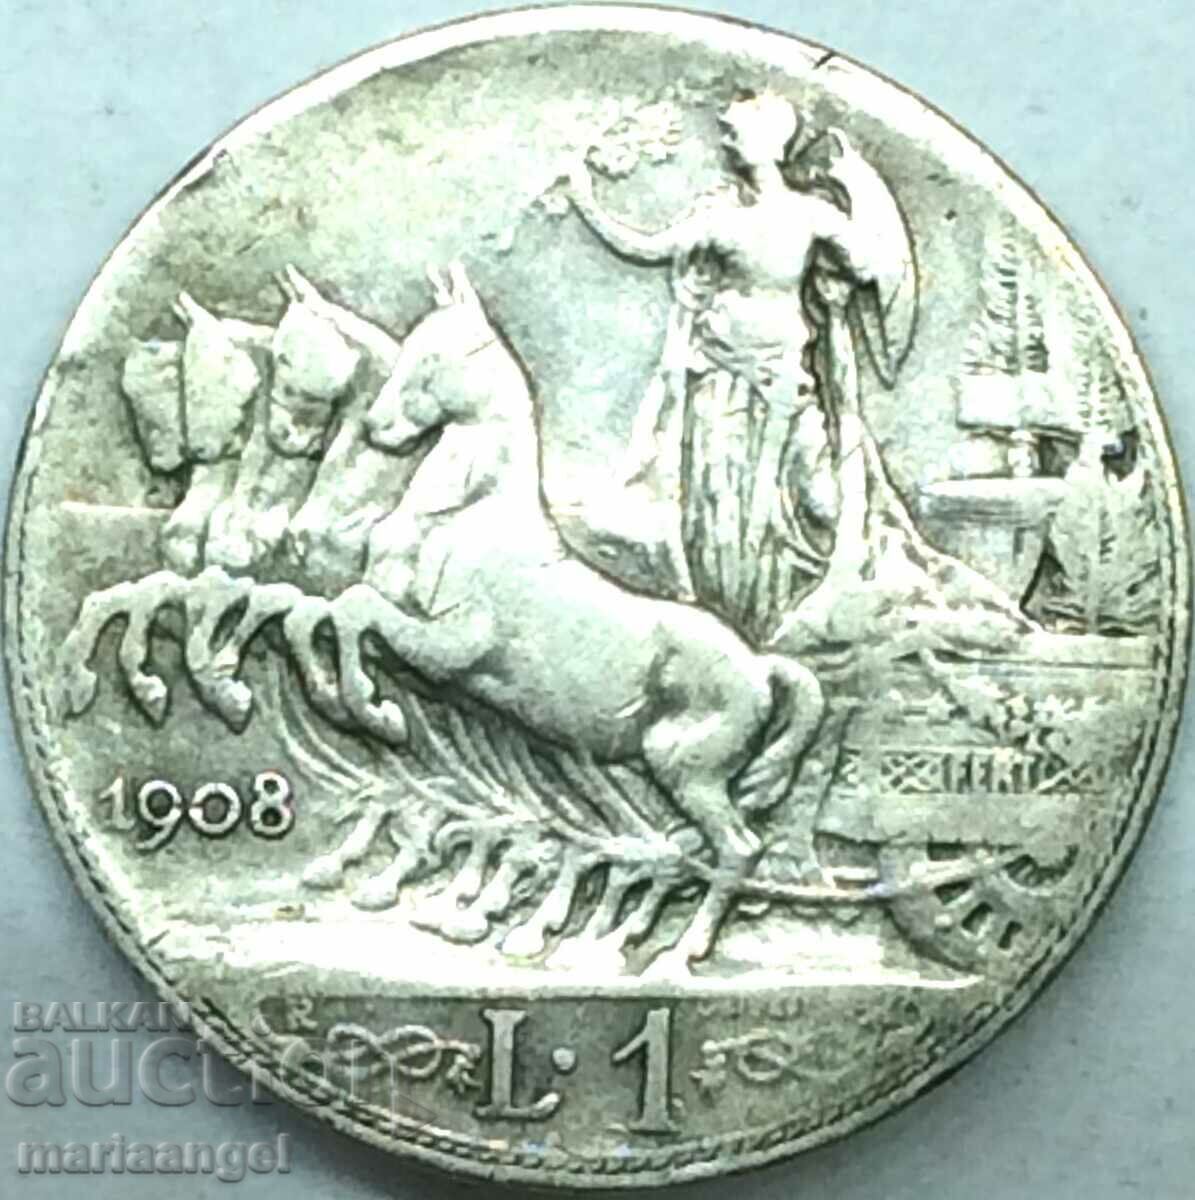 1 lira 1908 Italy silver